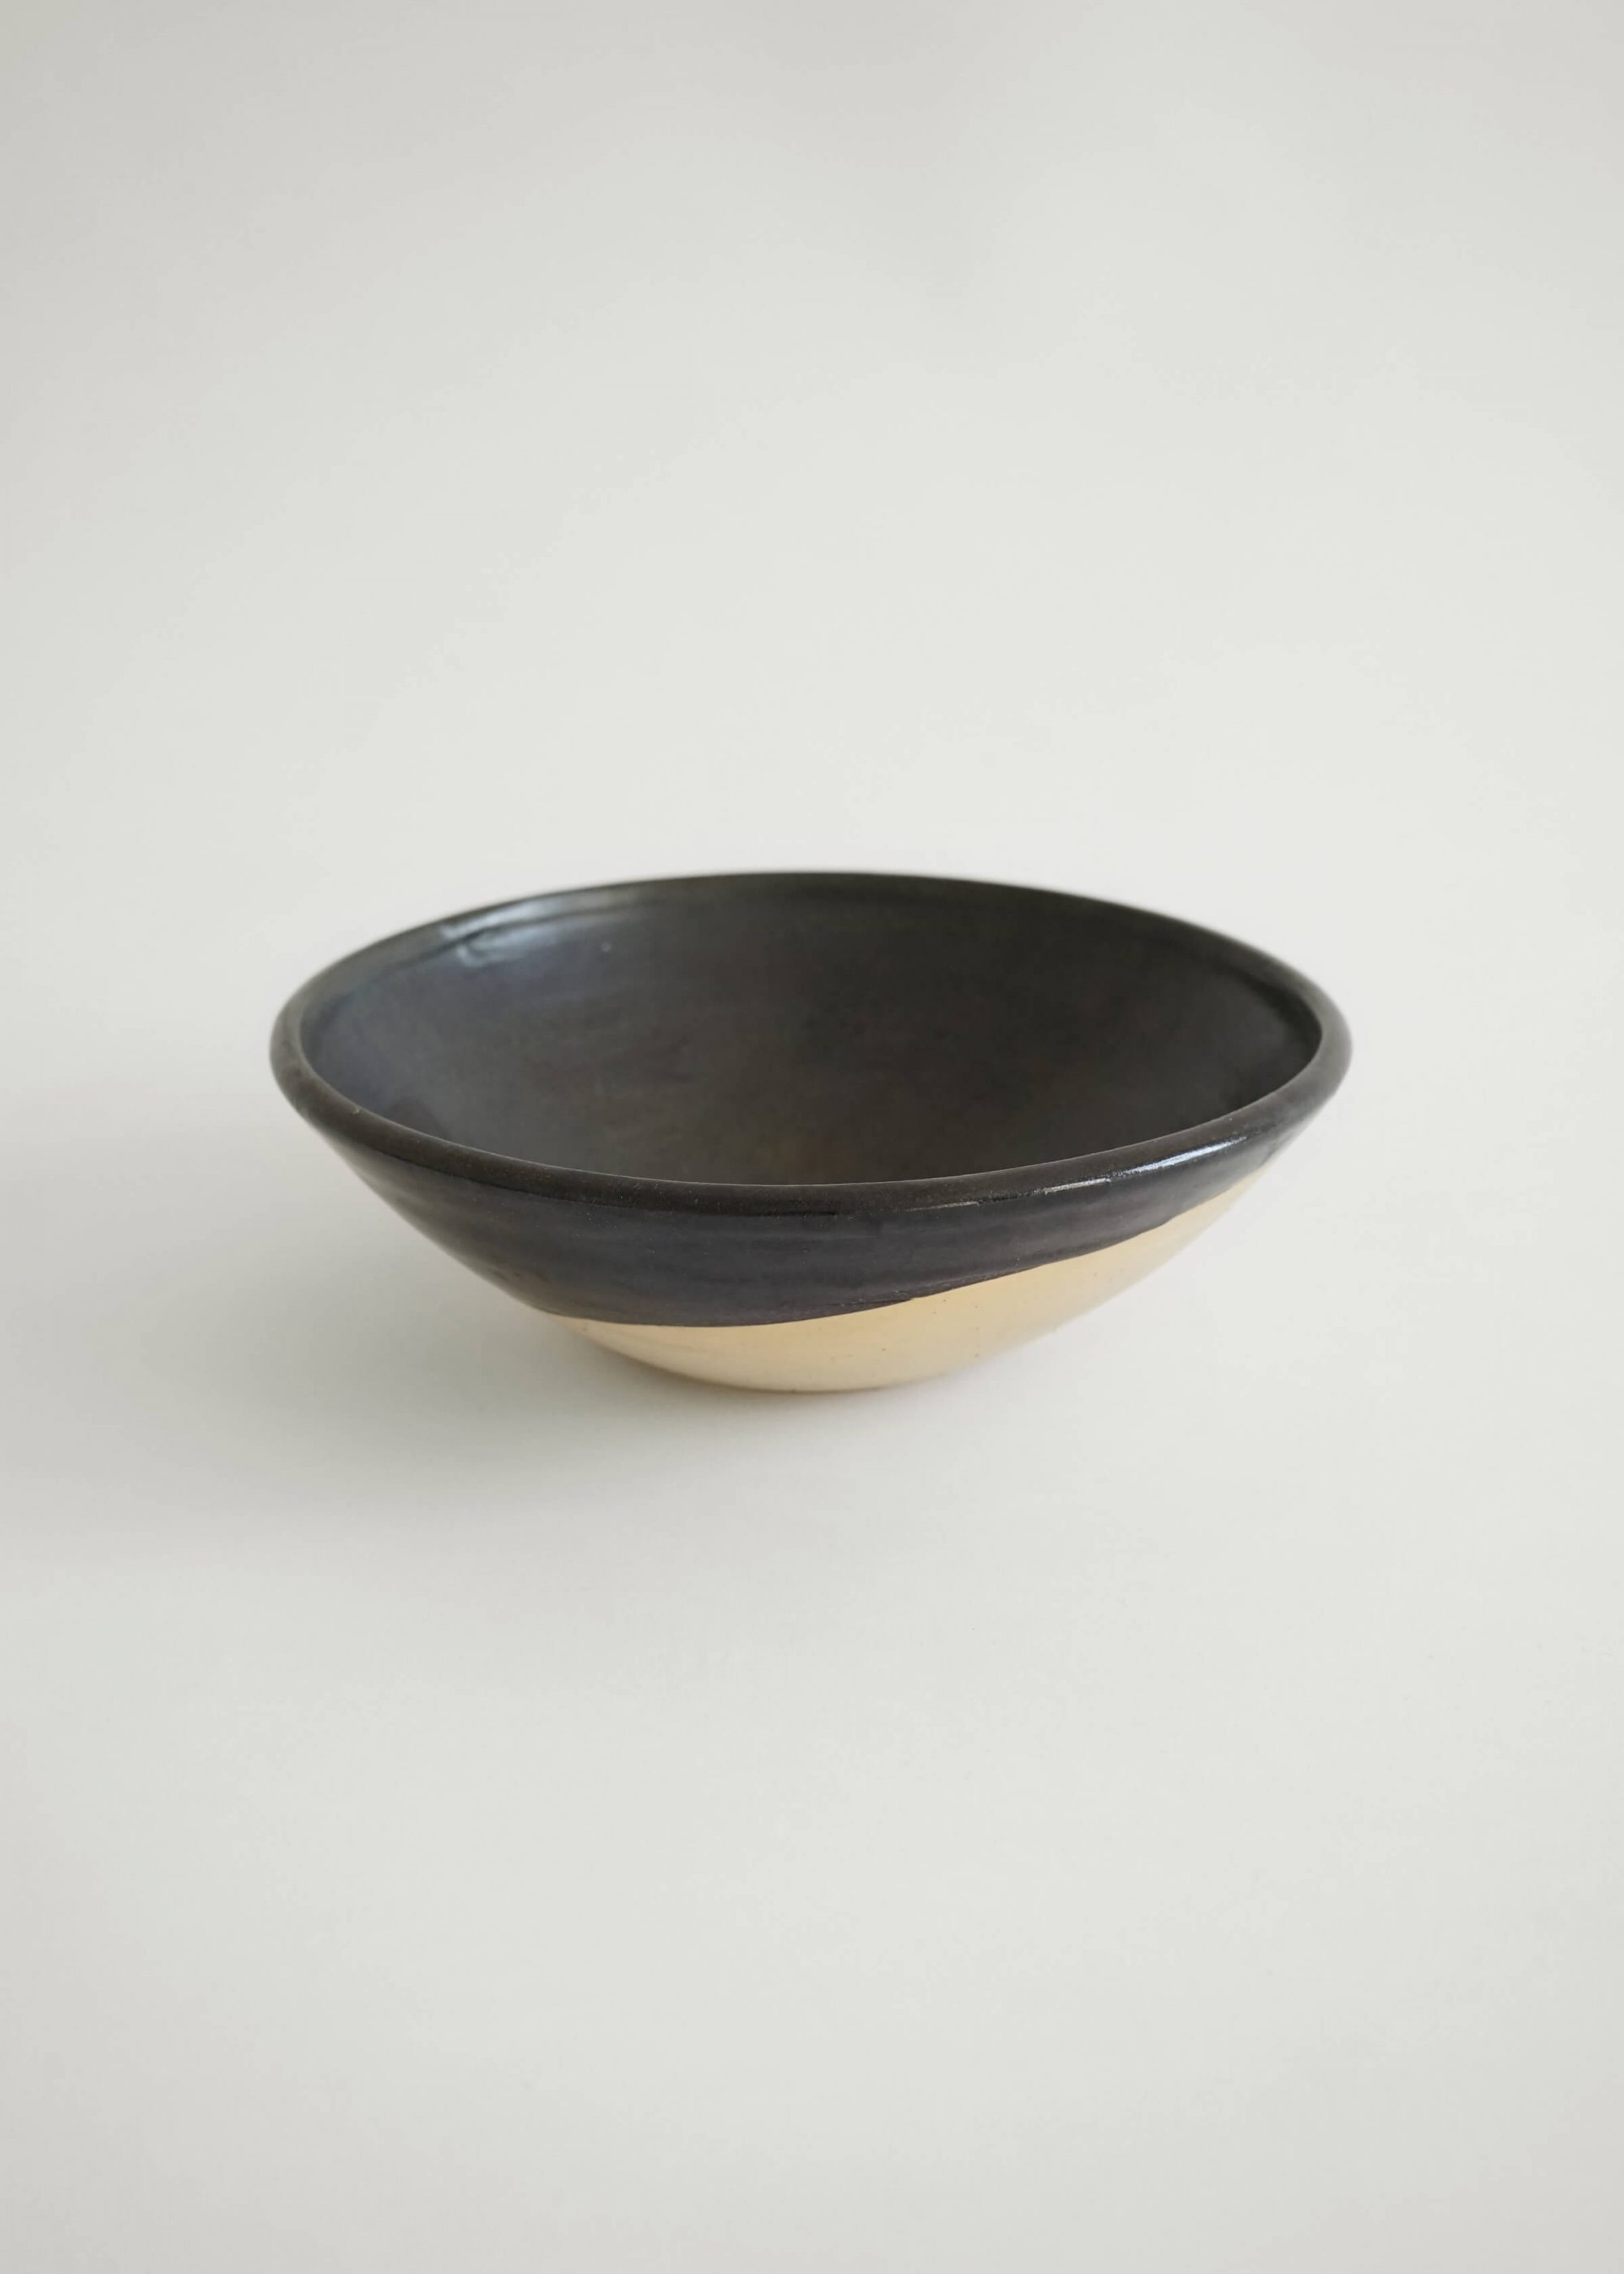 Product image for »Baba« Black Semi-glazed Conical Stoneware Bowl